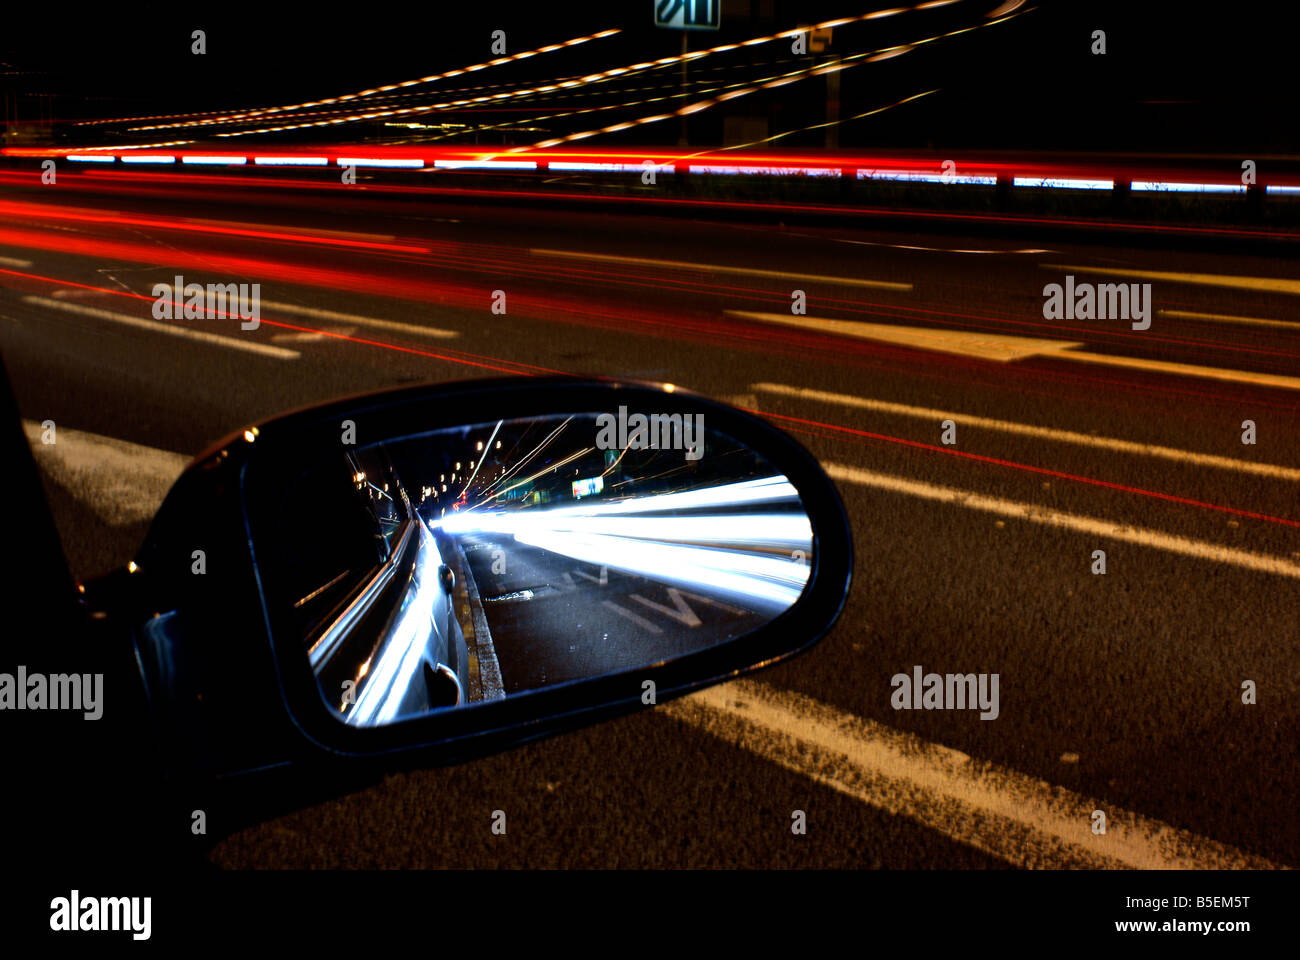 Auto Lichter auf dem Weg von dem Fahrer sowohl als in Richtung kommen und gehen vorbei gesehen Stockfoto